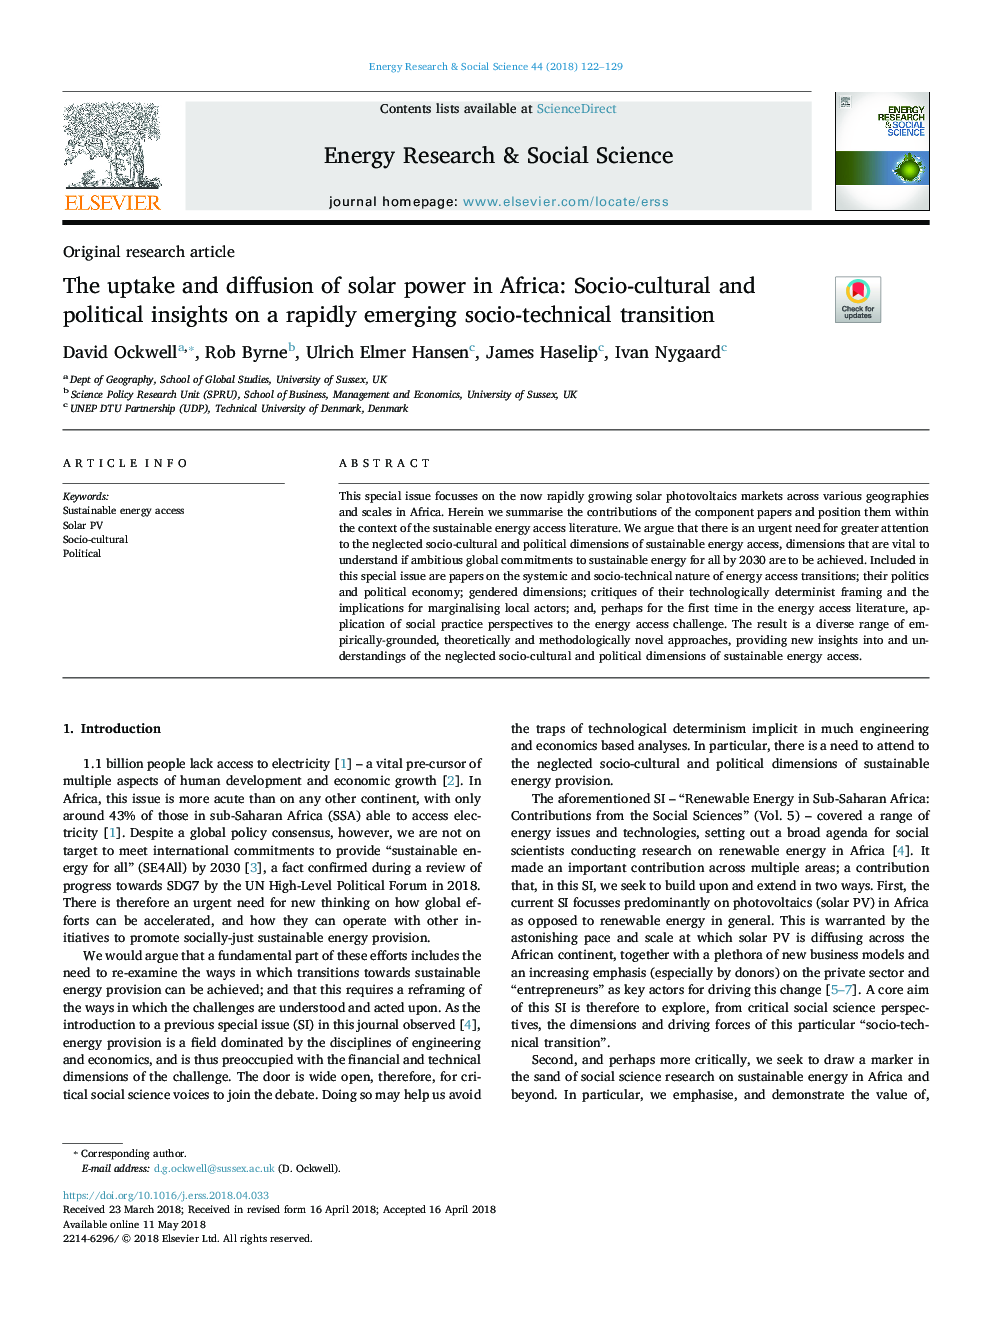 جذب و انتشار انرژی خورشیدی در آفریقا: بینش اجتماعی-فرهنگی و سیاسی در مورد انتقال سریع اجتماعی و تکنیکی 